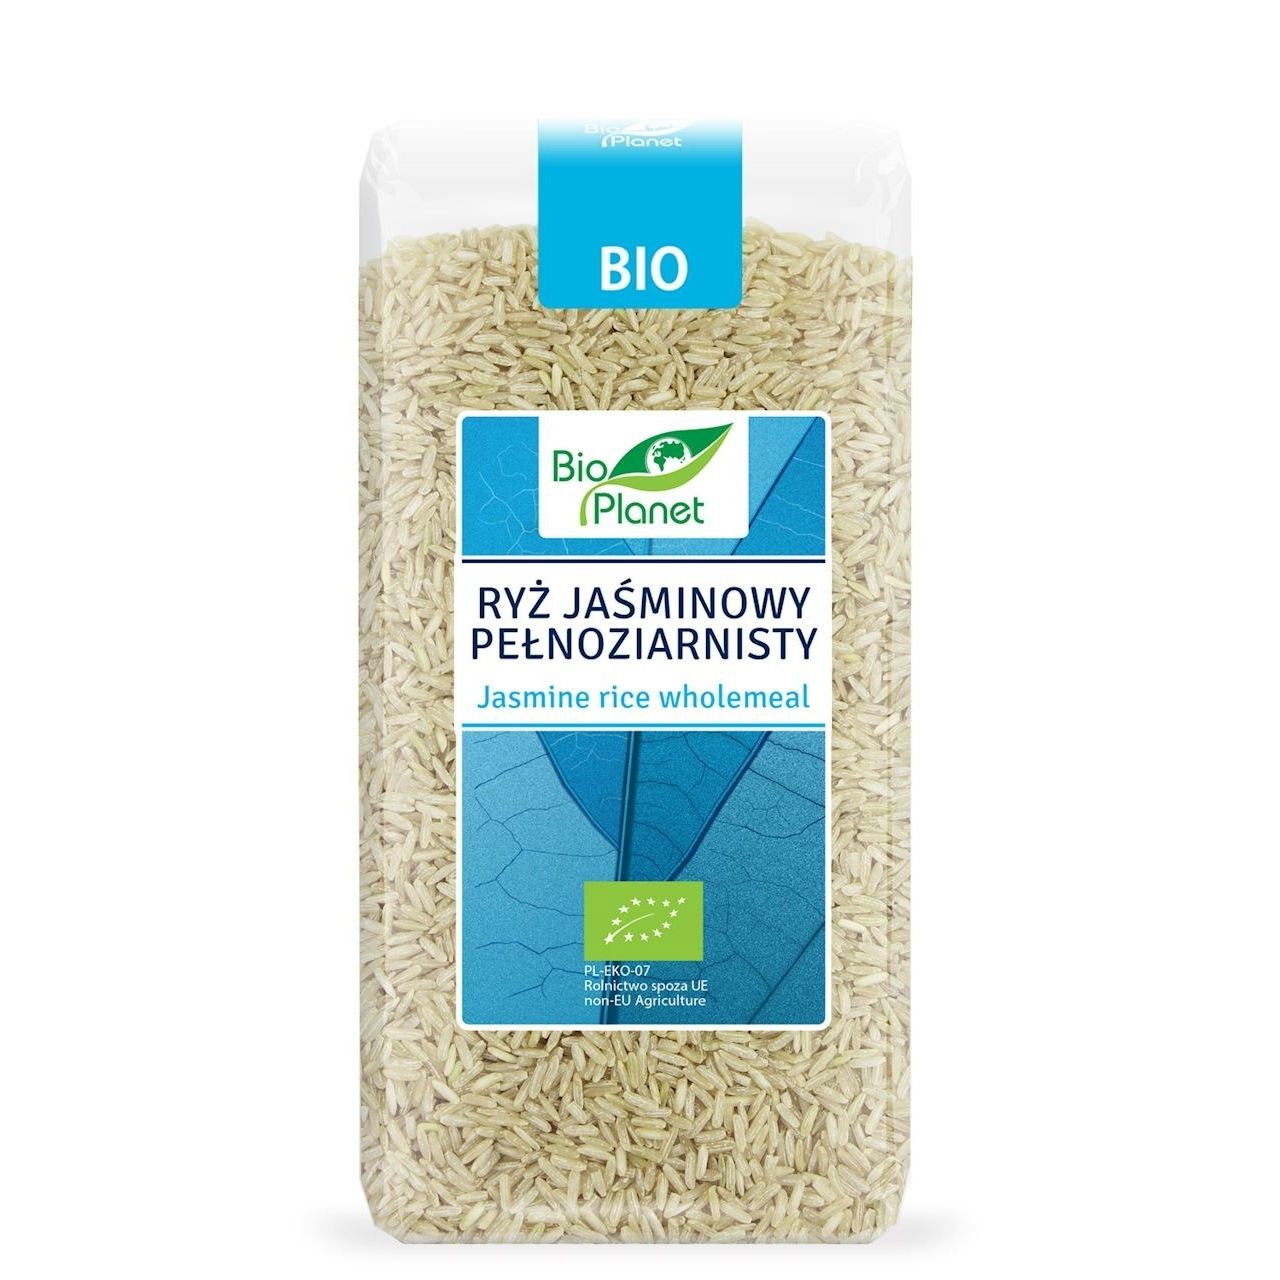 Ryż jaśminowy pełnoziarnisty BIO 500 g - Bio Planet